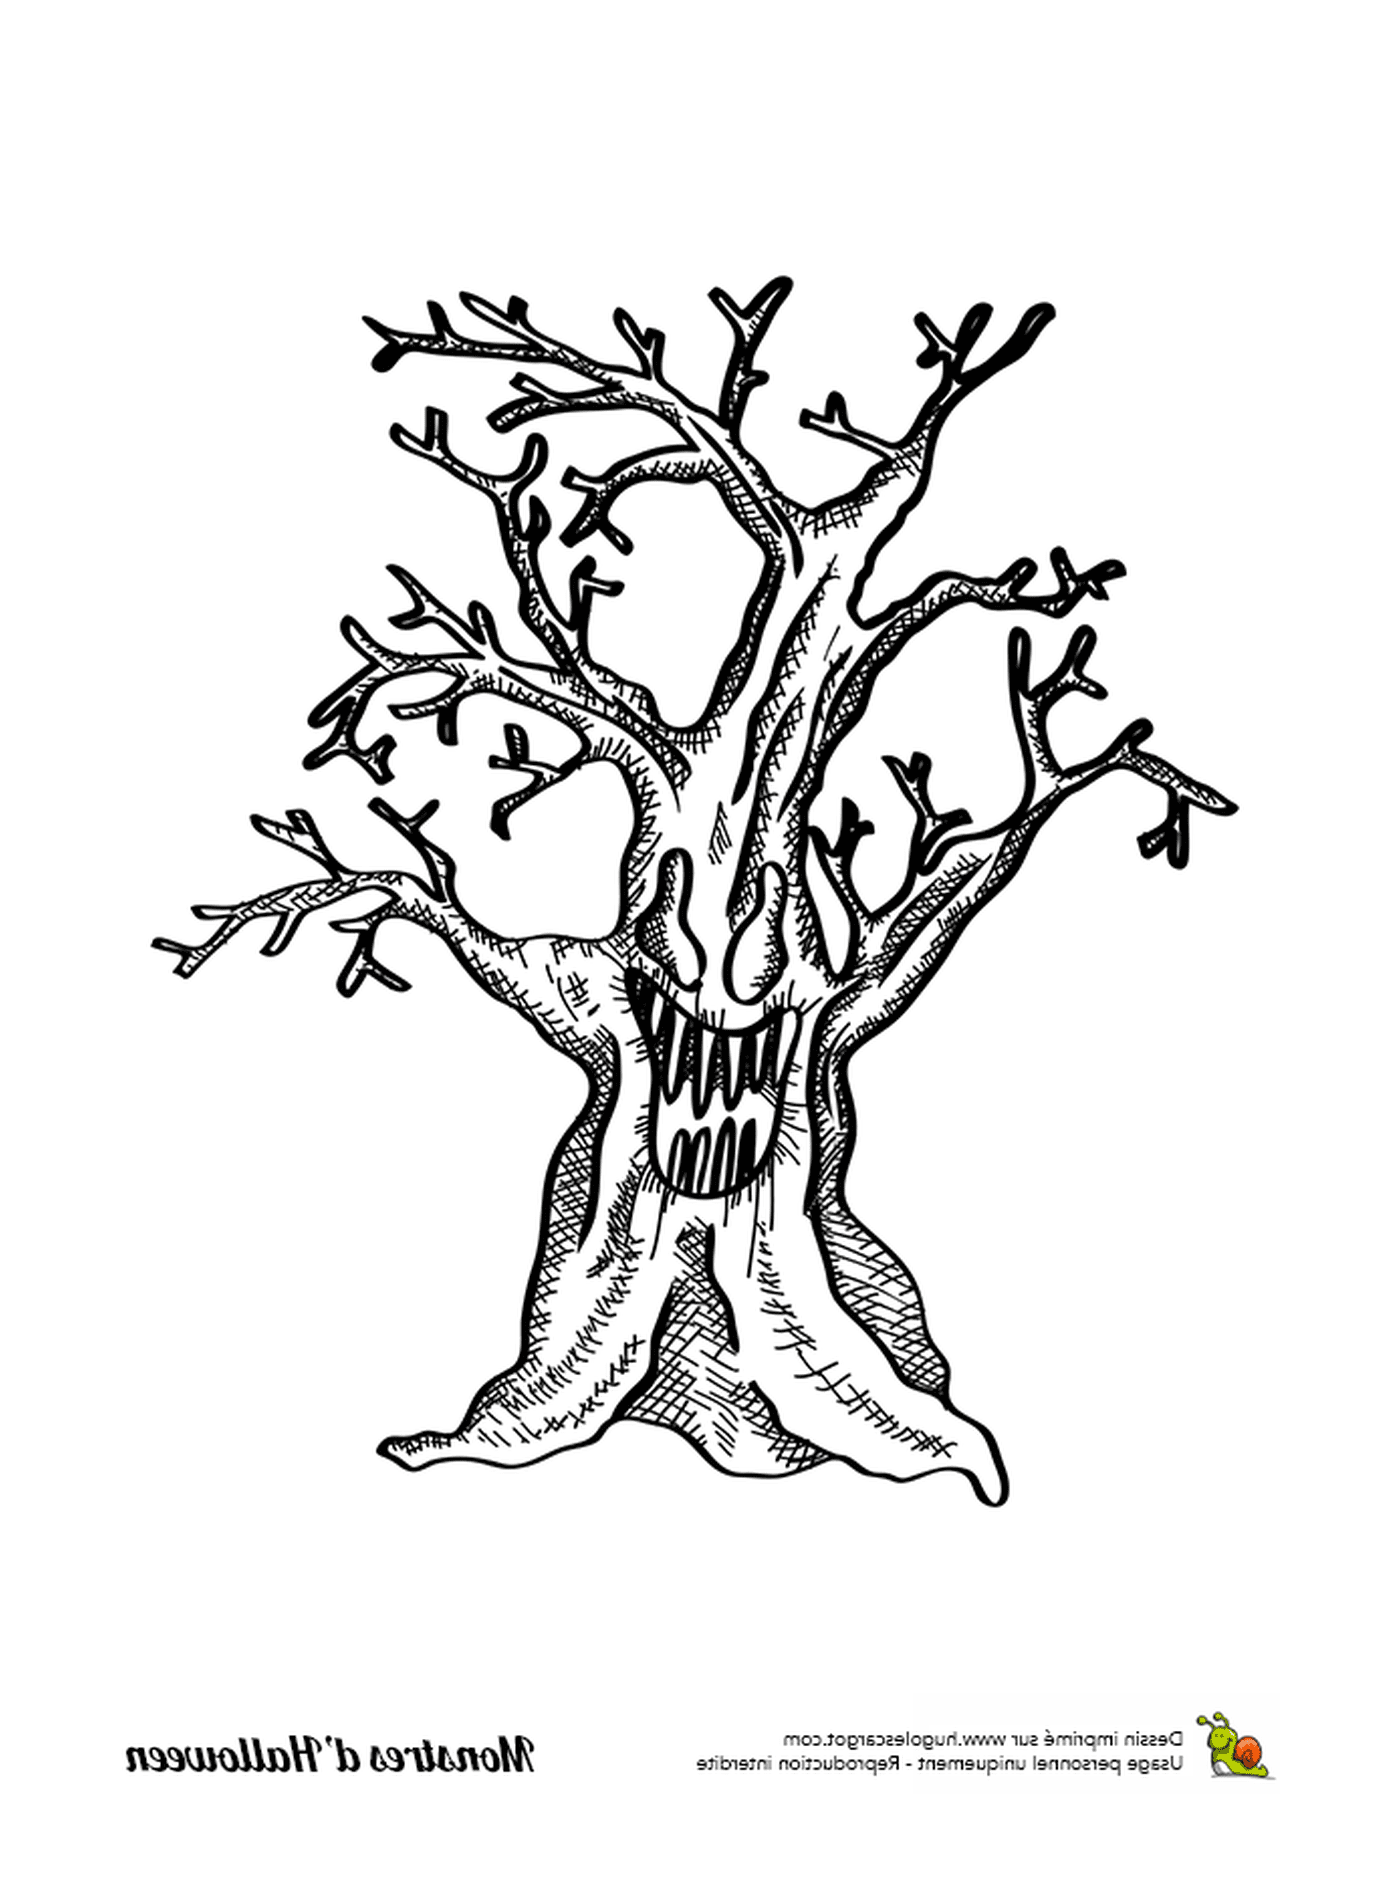   Une encre, un vieil arbre sans feuilles 